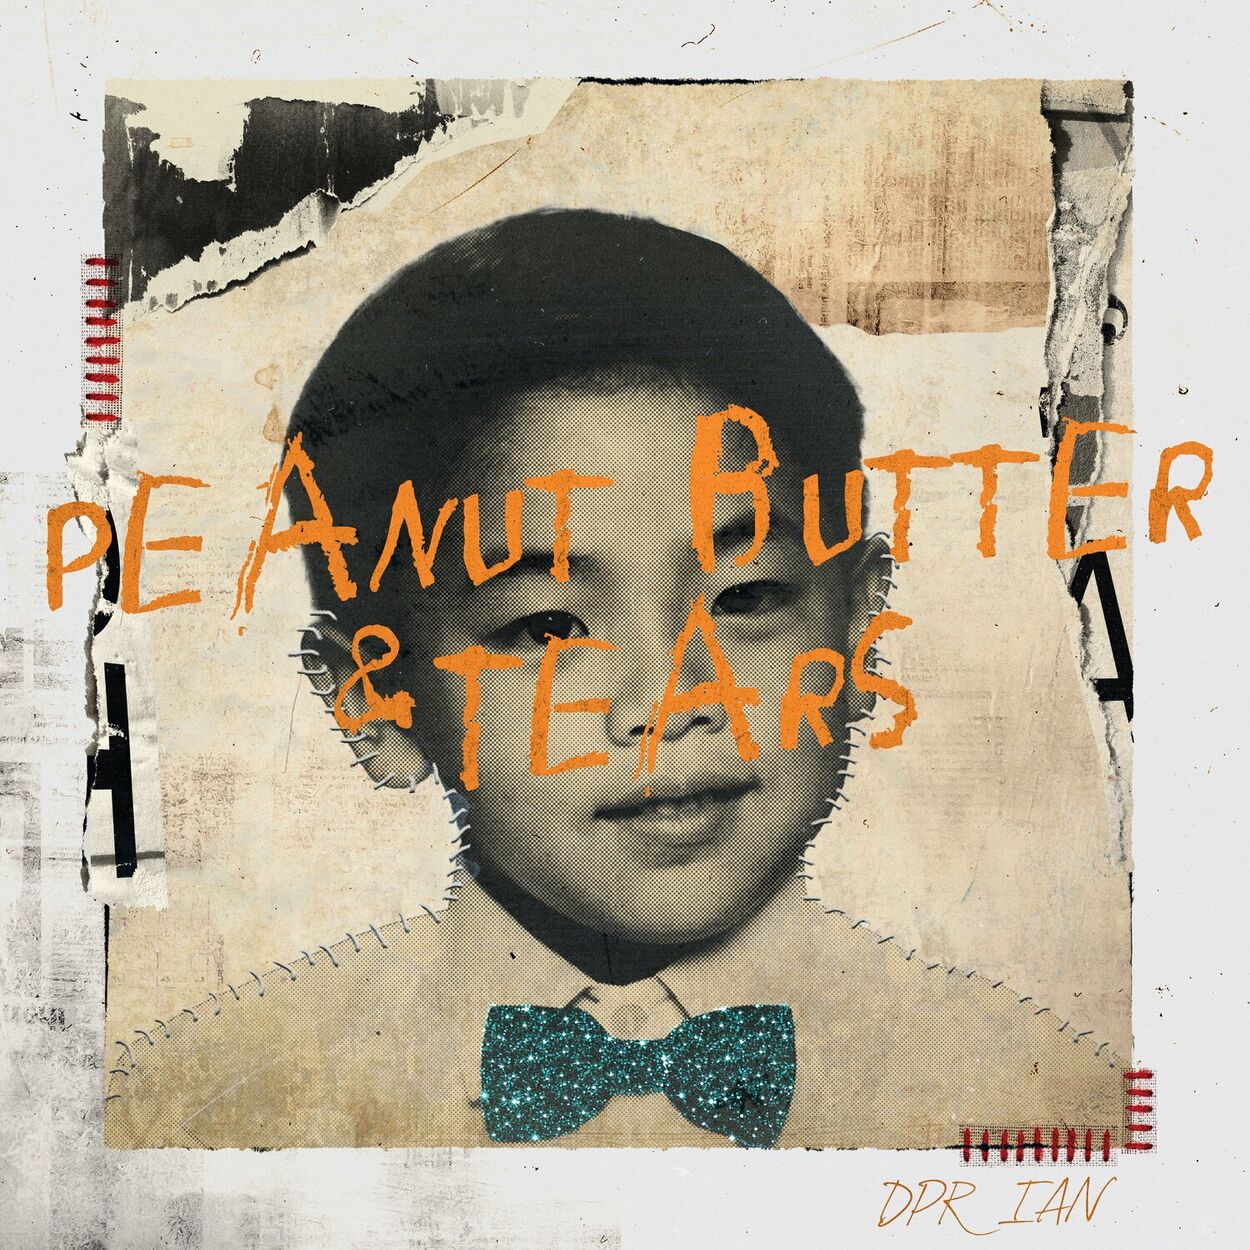 DPR IAN – Peanut Butter & Tears – Single